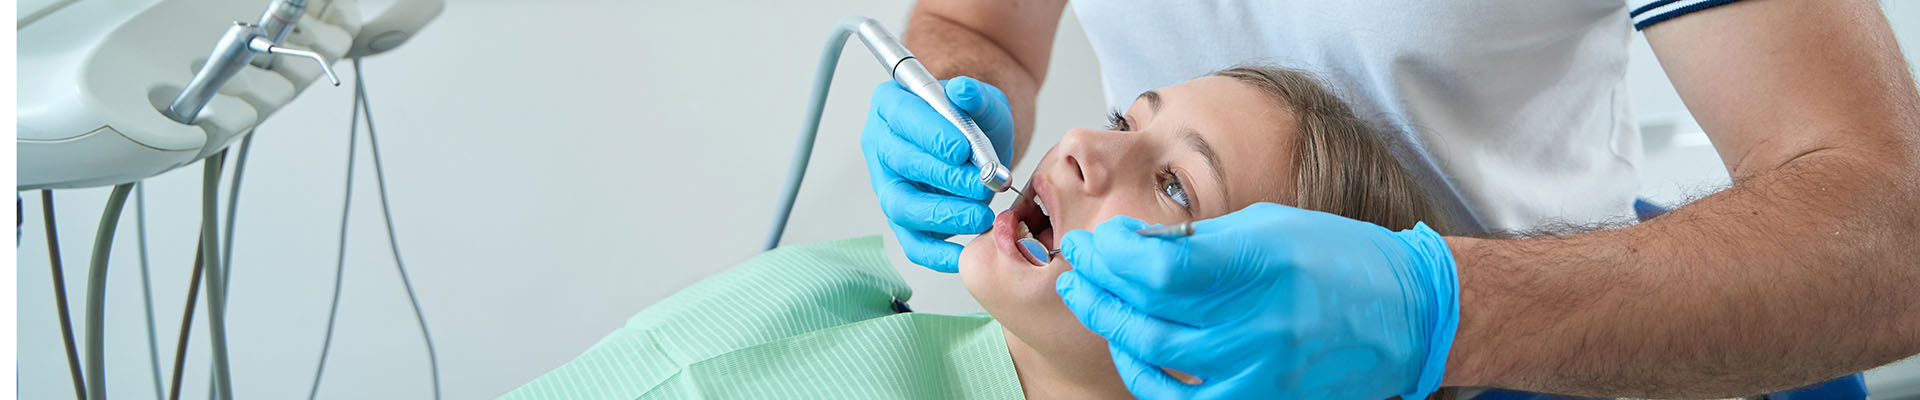 Clínica Dental Andrea Compte, tu Centro Odontológico especializado. Odontopediatría en Sant Jordi. Dentista pediátrico que trata caries en una adolescente.